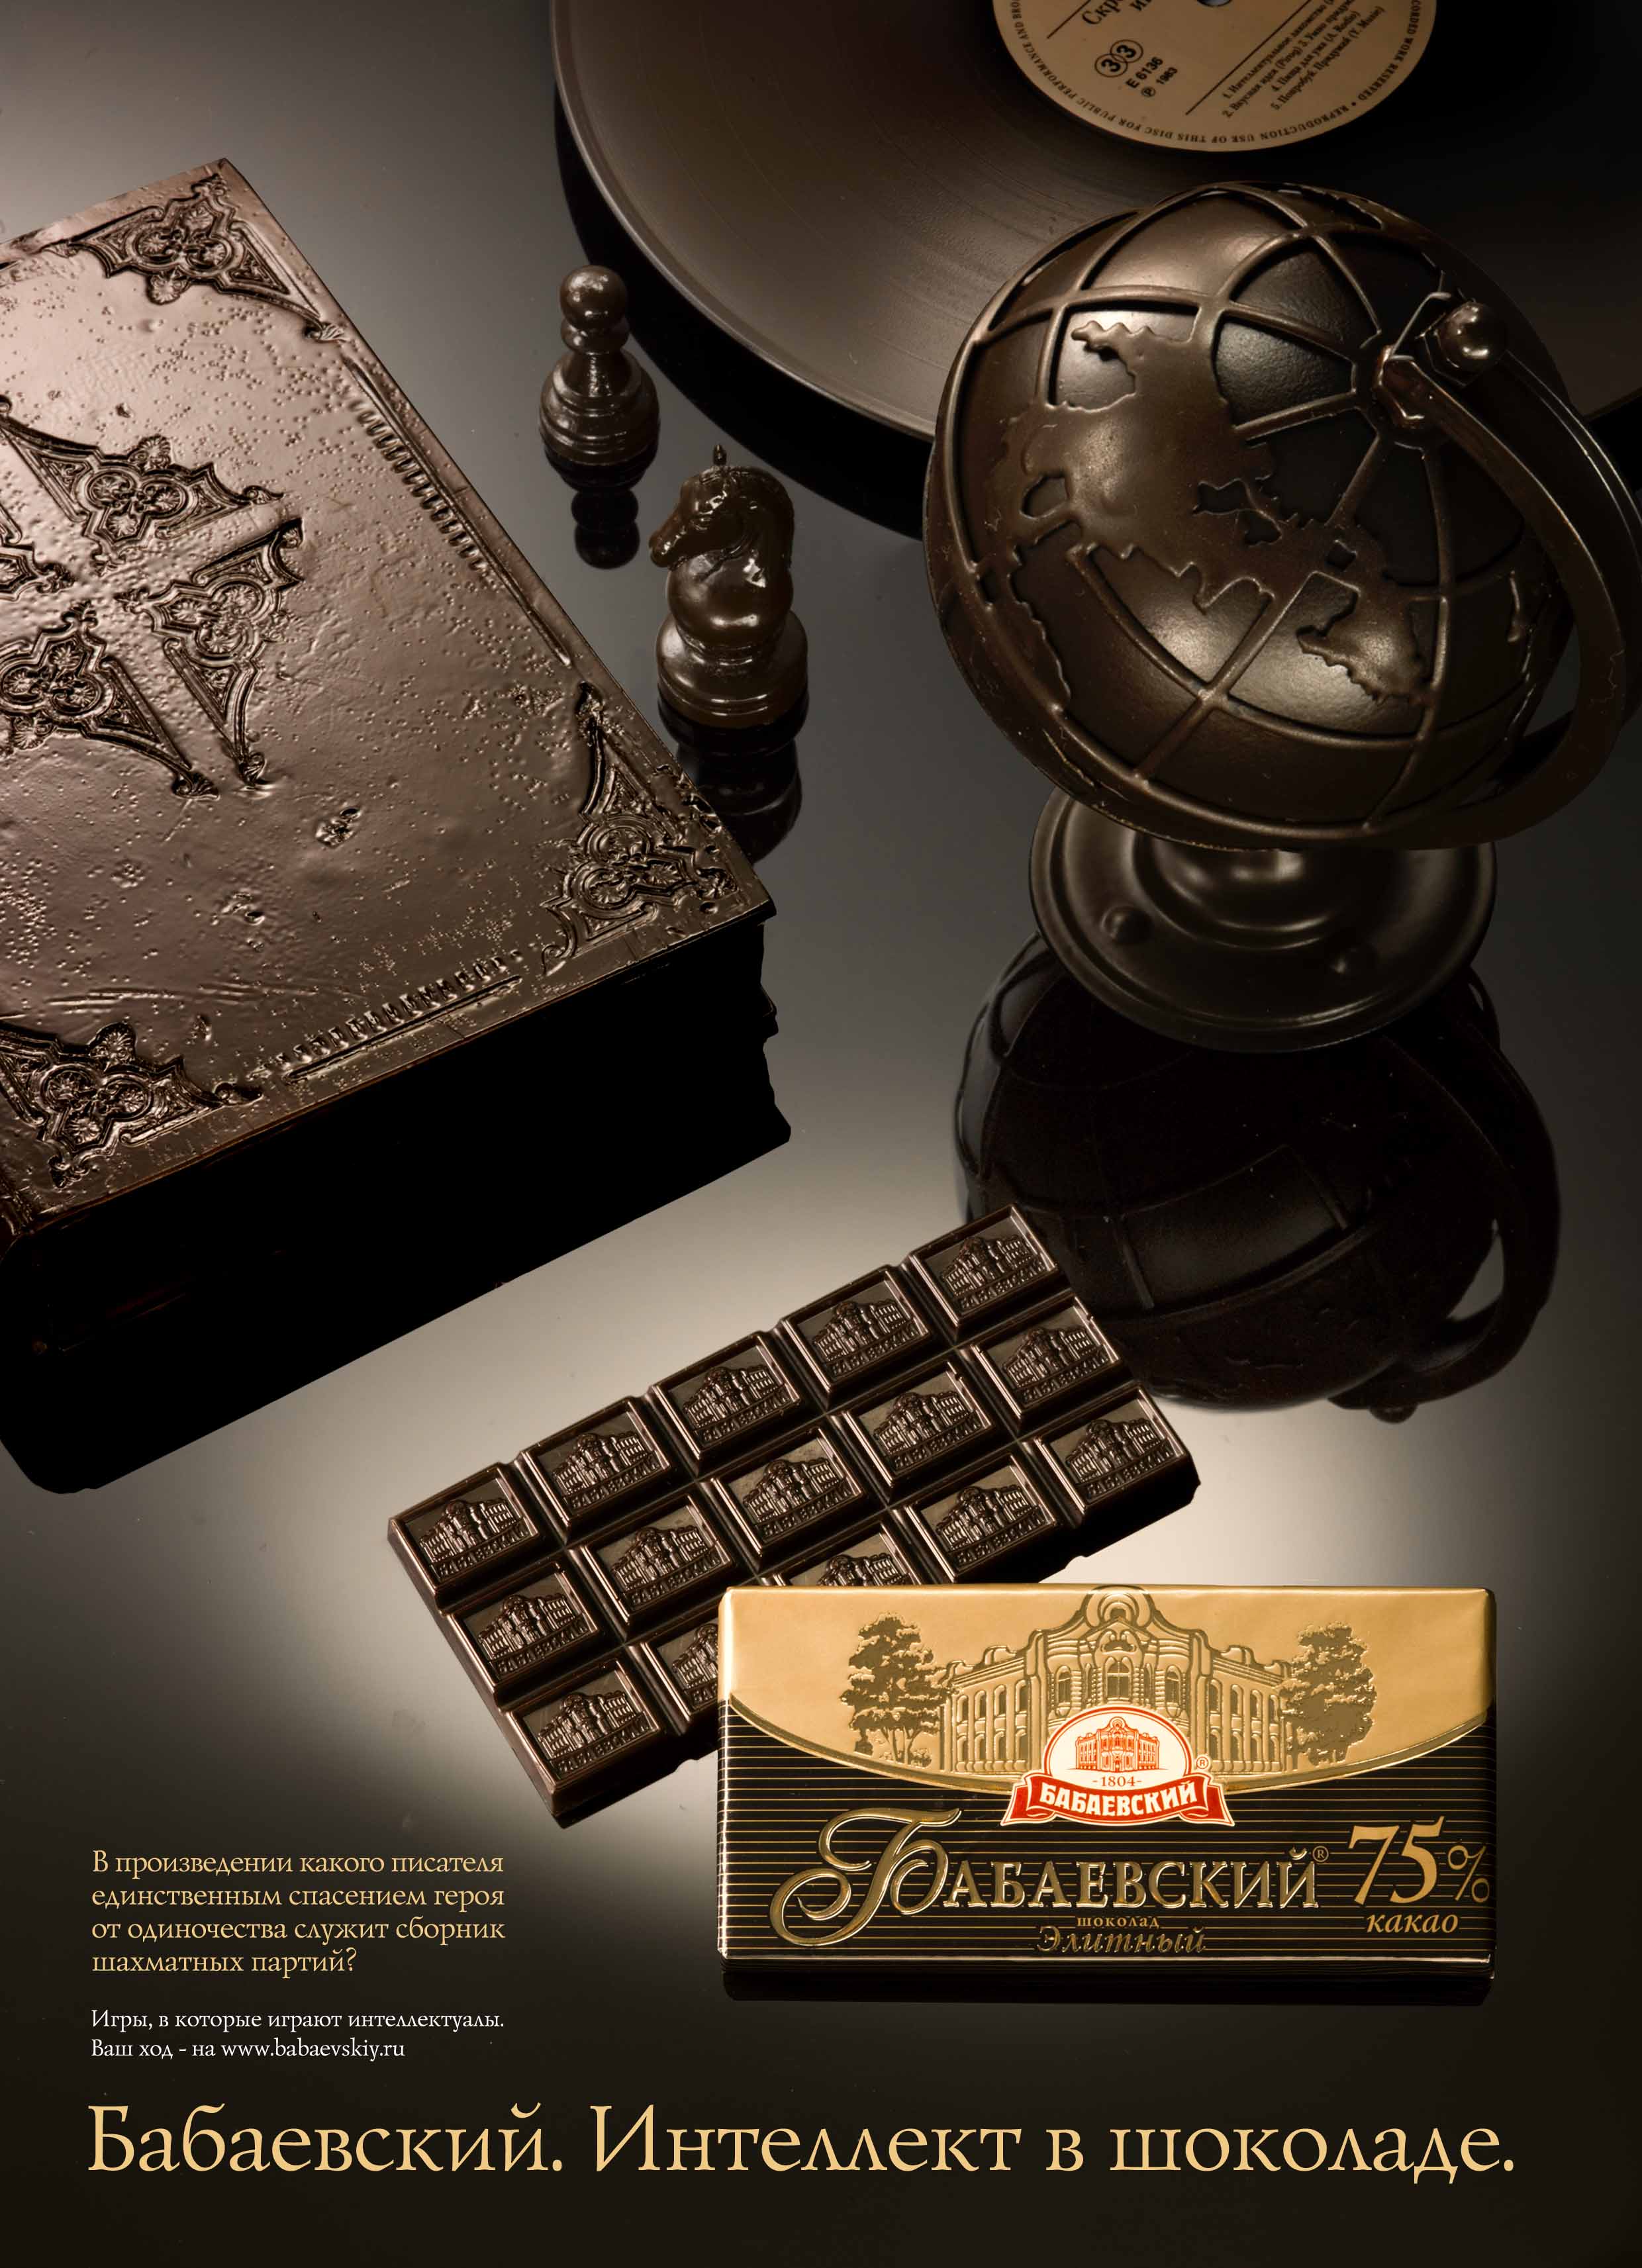 Шоколад и писатель. Бабаевский шоколад реклама. Реклама шоколада. Шоколад "Бабаевский". Реклама шоколадных конфет.